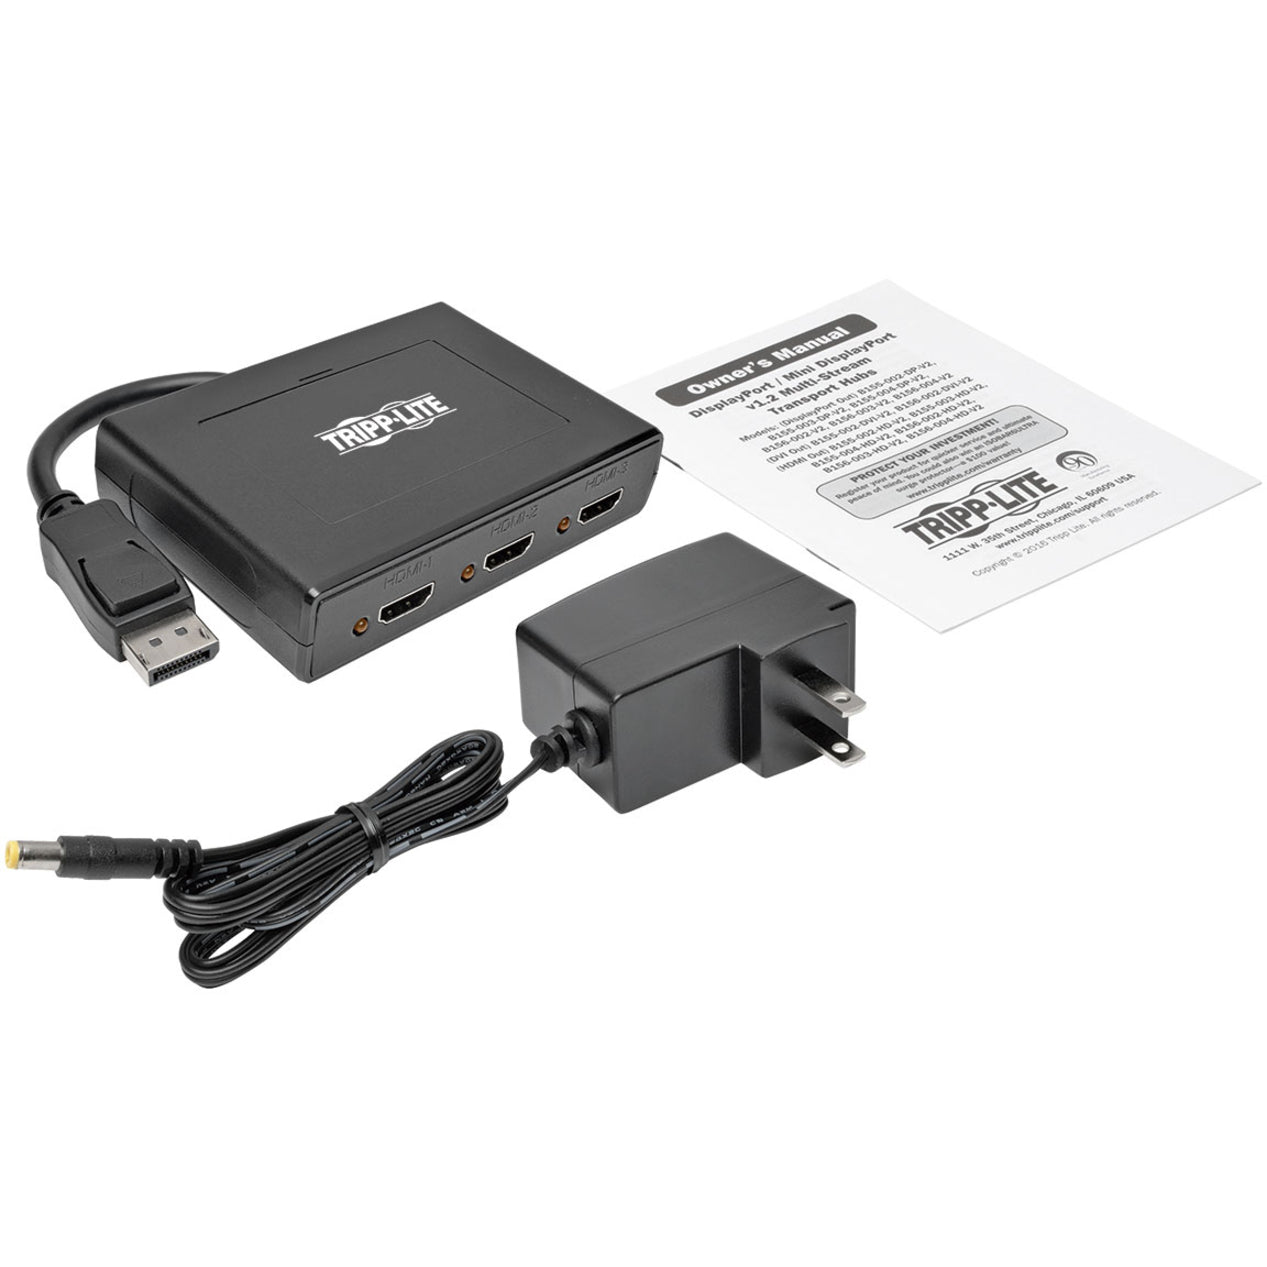 Tripp Lite B156-003-HD-V2 3-Port DisplayPort 1.2 to HDMI MST Hub, 4K Video Resolution, TAA Compliant